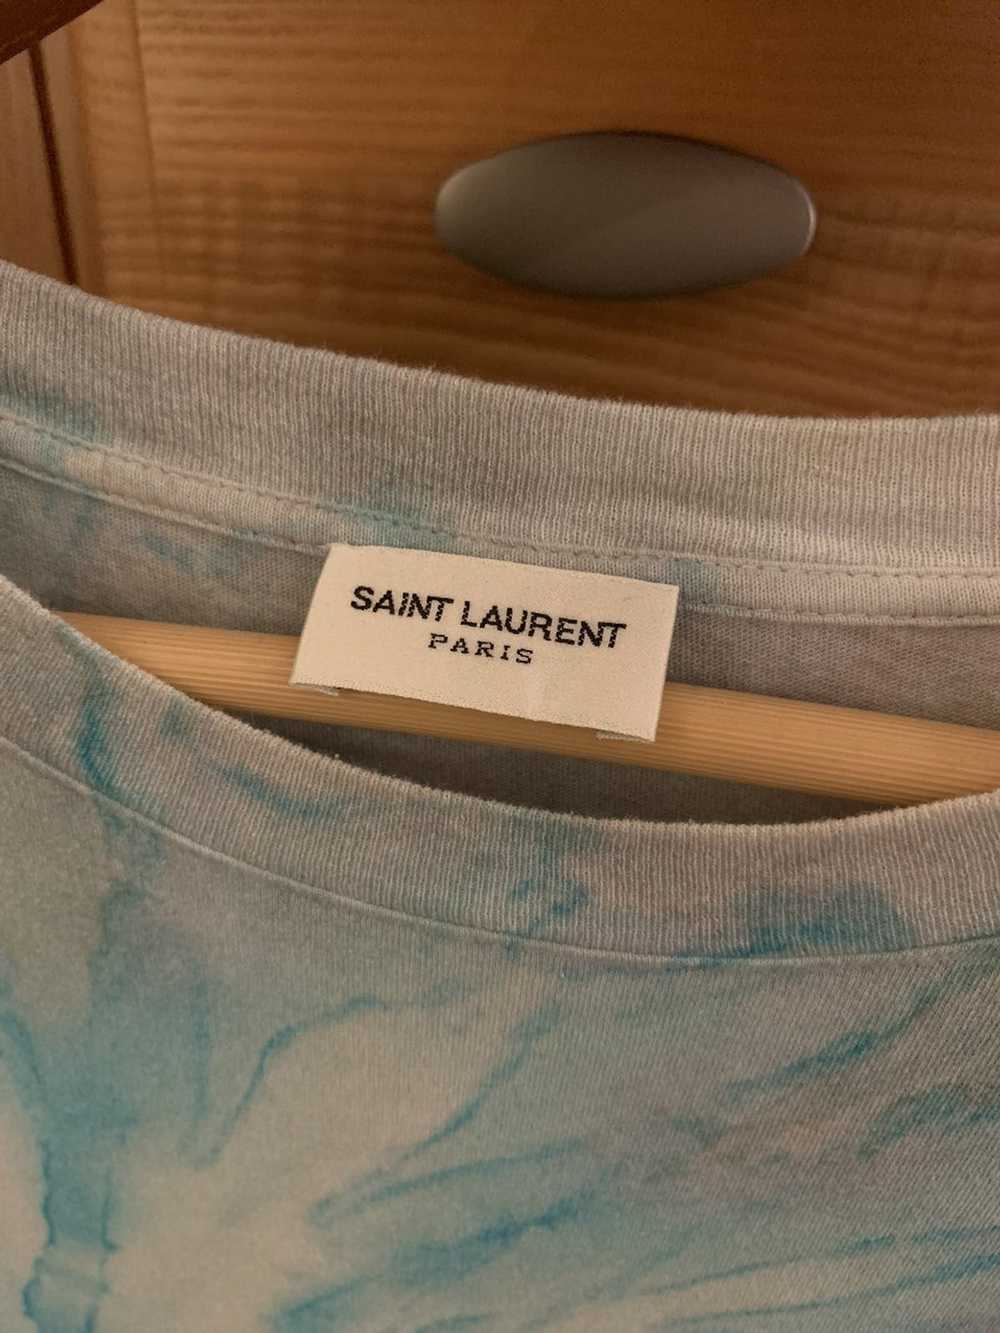 Saint Laurent Paris 2015 Saint Laurent Tie Dye Sh… - image 2